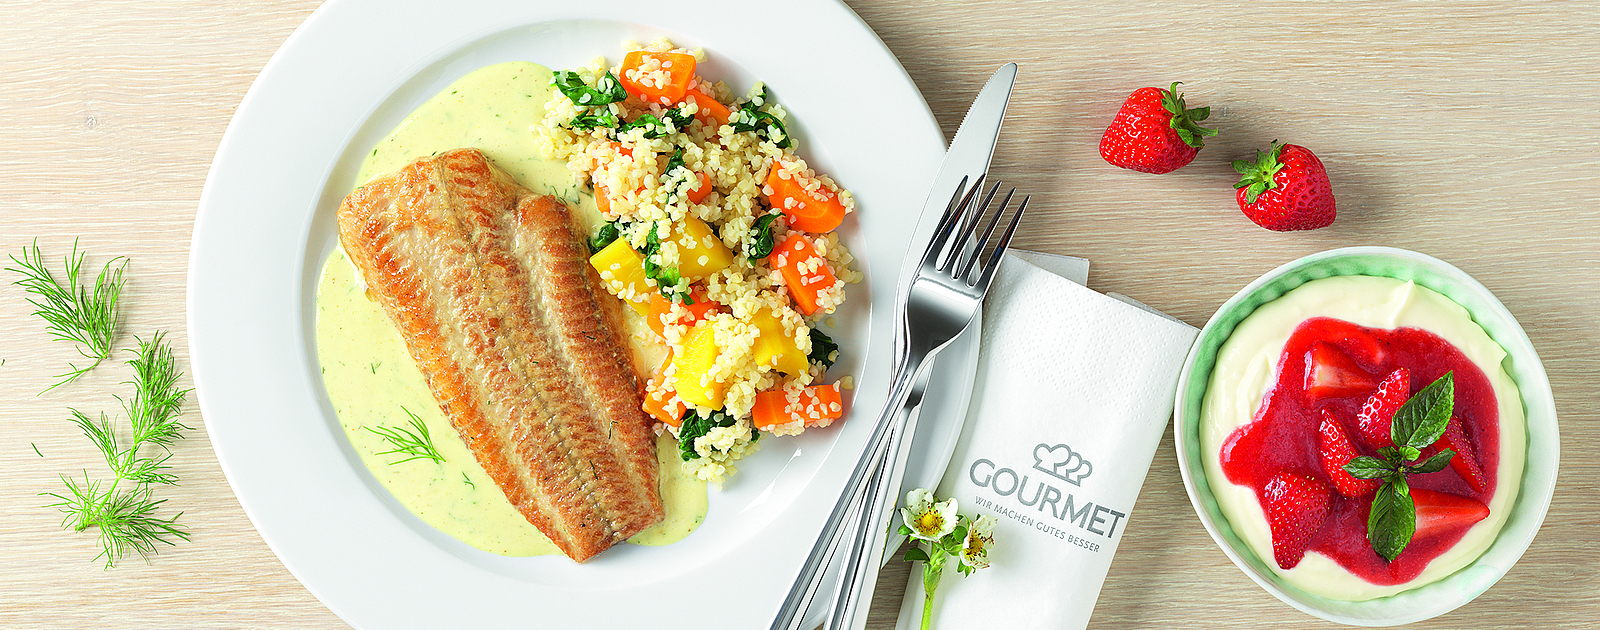 Wiener Wels in Krensauce mit Gemüsebulgur mit Fisch vom Lieferanten aus Wien.